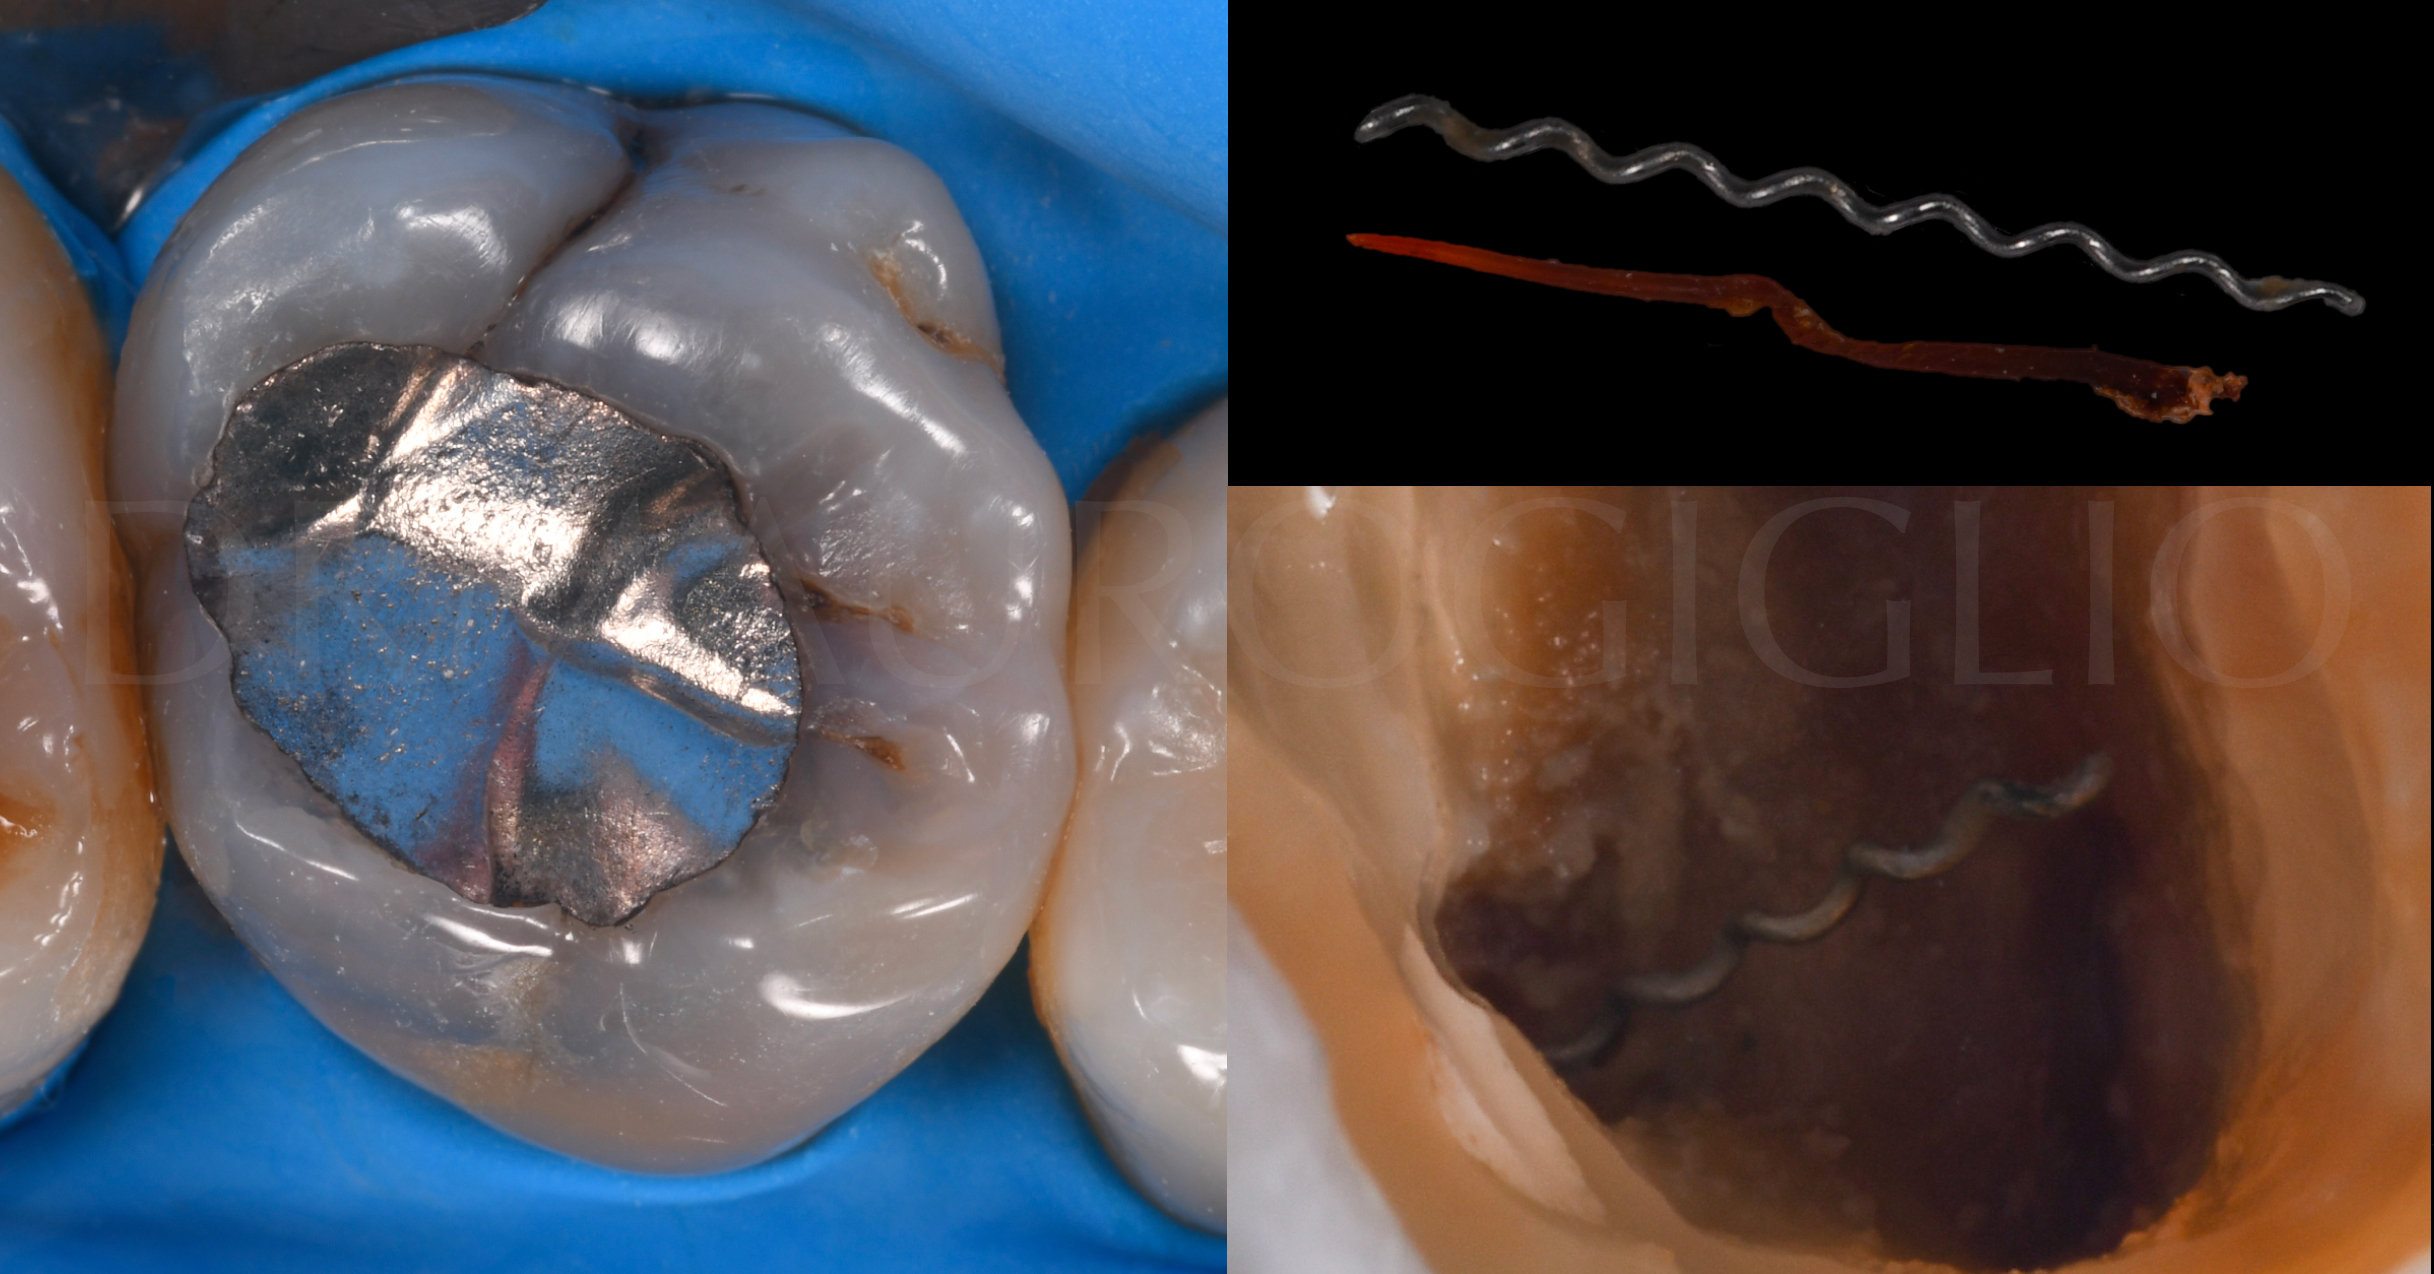 2 - Dr. Maglio Giglio - Visione elemento isolato con diga di gomma, della cavità, del lentulo e di un cono di guttaperca